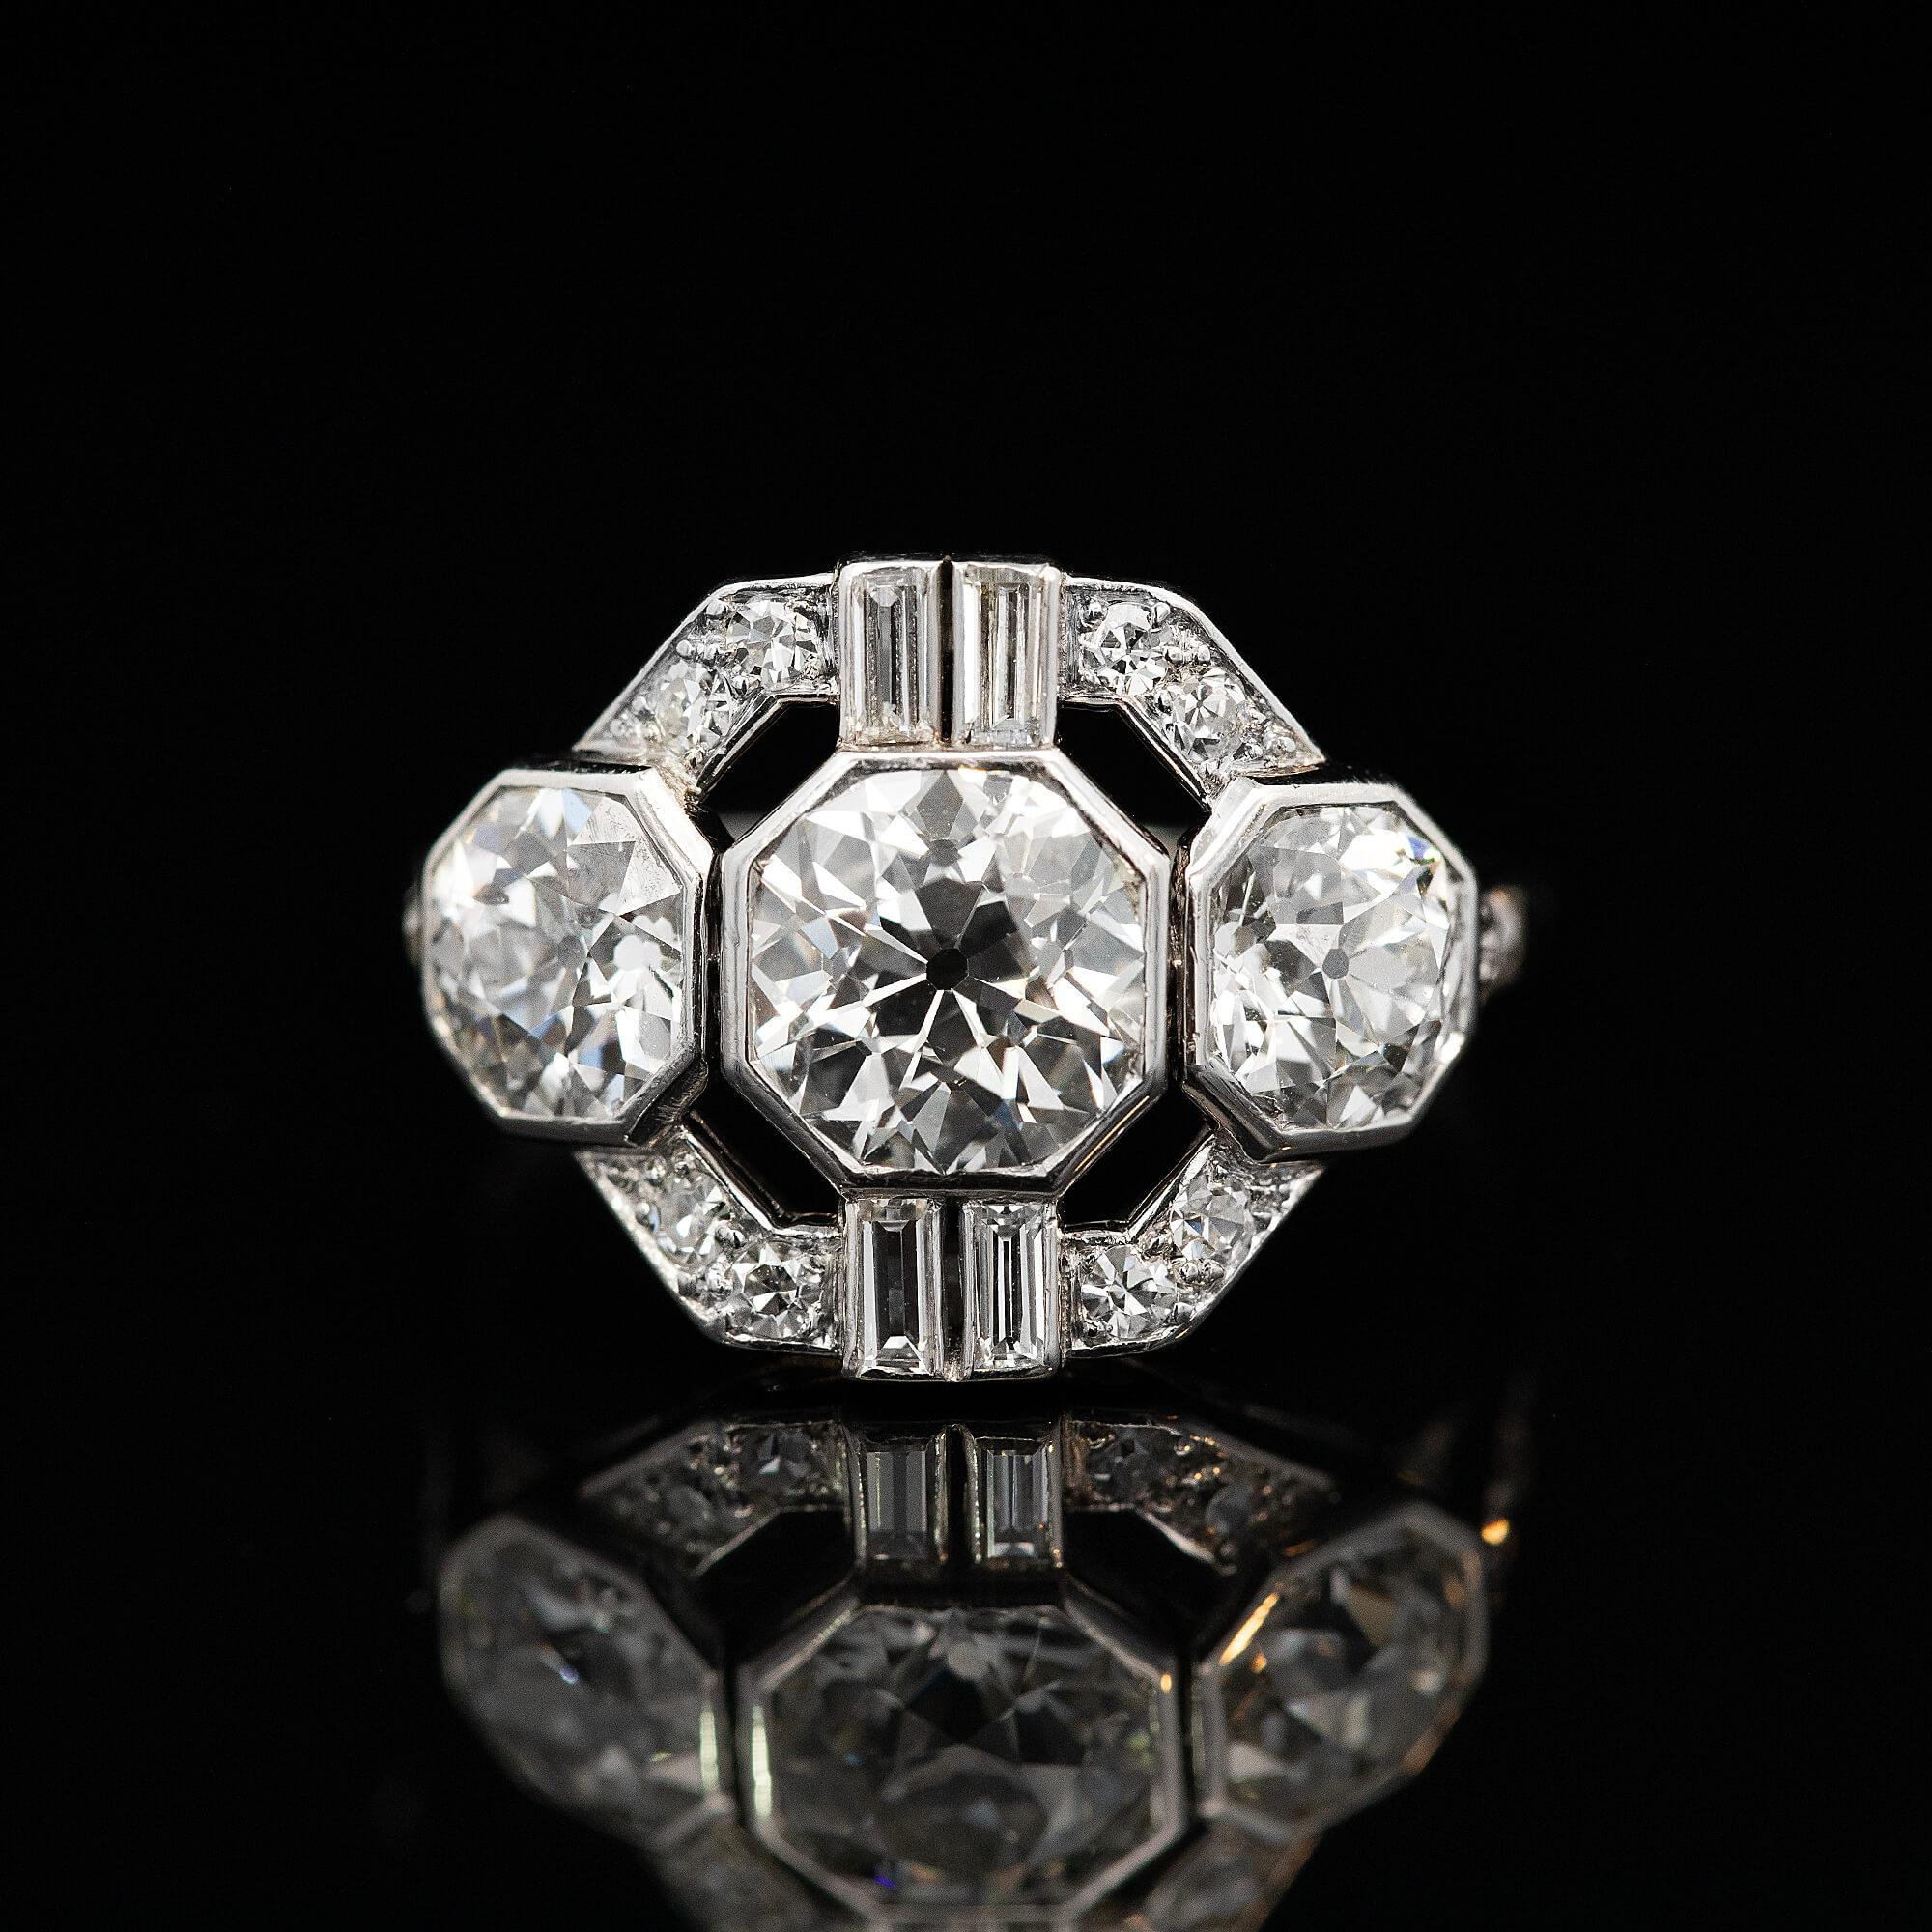 Ein geometrischer Art-Deco-Cluster, bei dem die größeren Diamanten in sechseckigen Lünetten gefasst sind. Dieser Ring erstreckt sich über den ganzen Finger und ist bis zum Fluchtpunkt mit Diamanten besetzt. Trueing, dieser Ring bringt das glamouröse